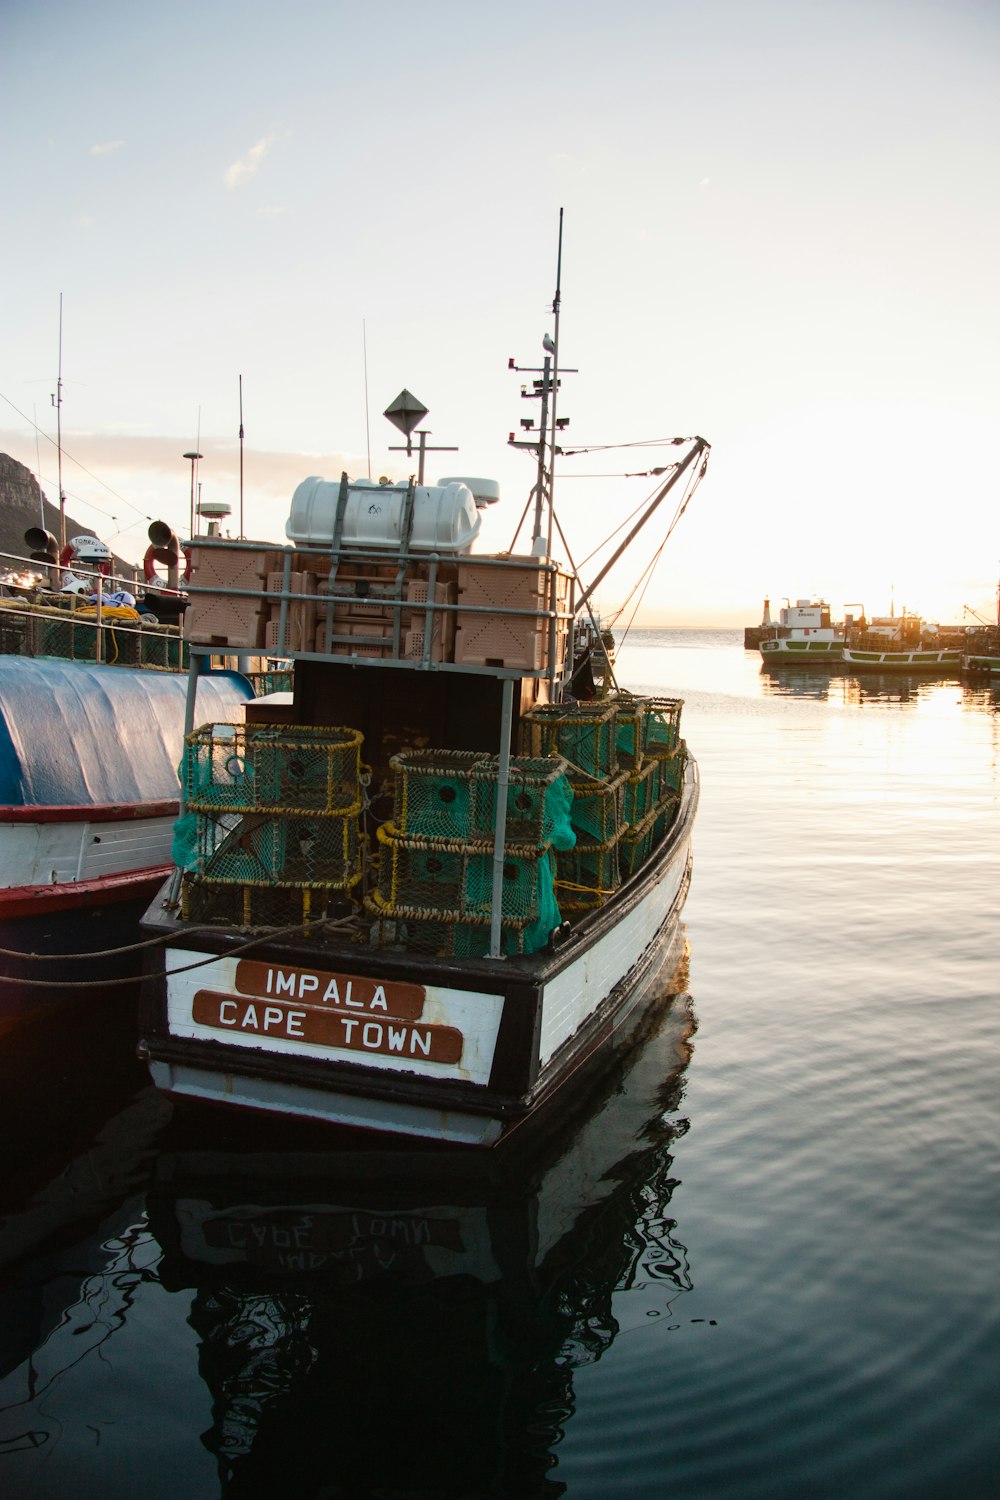 日の出時の水域に浮かぶ白と黒のイマパラケープタウン漁船